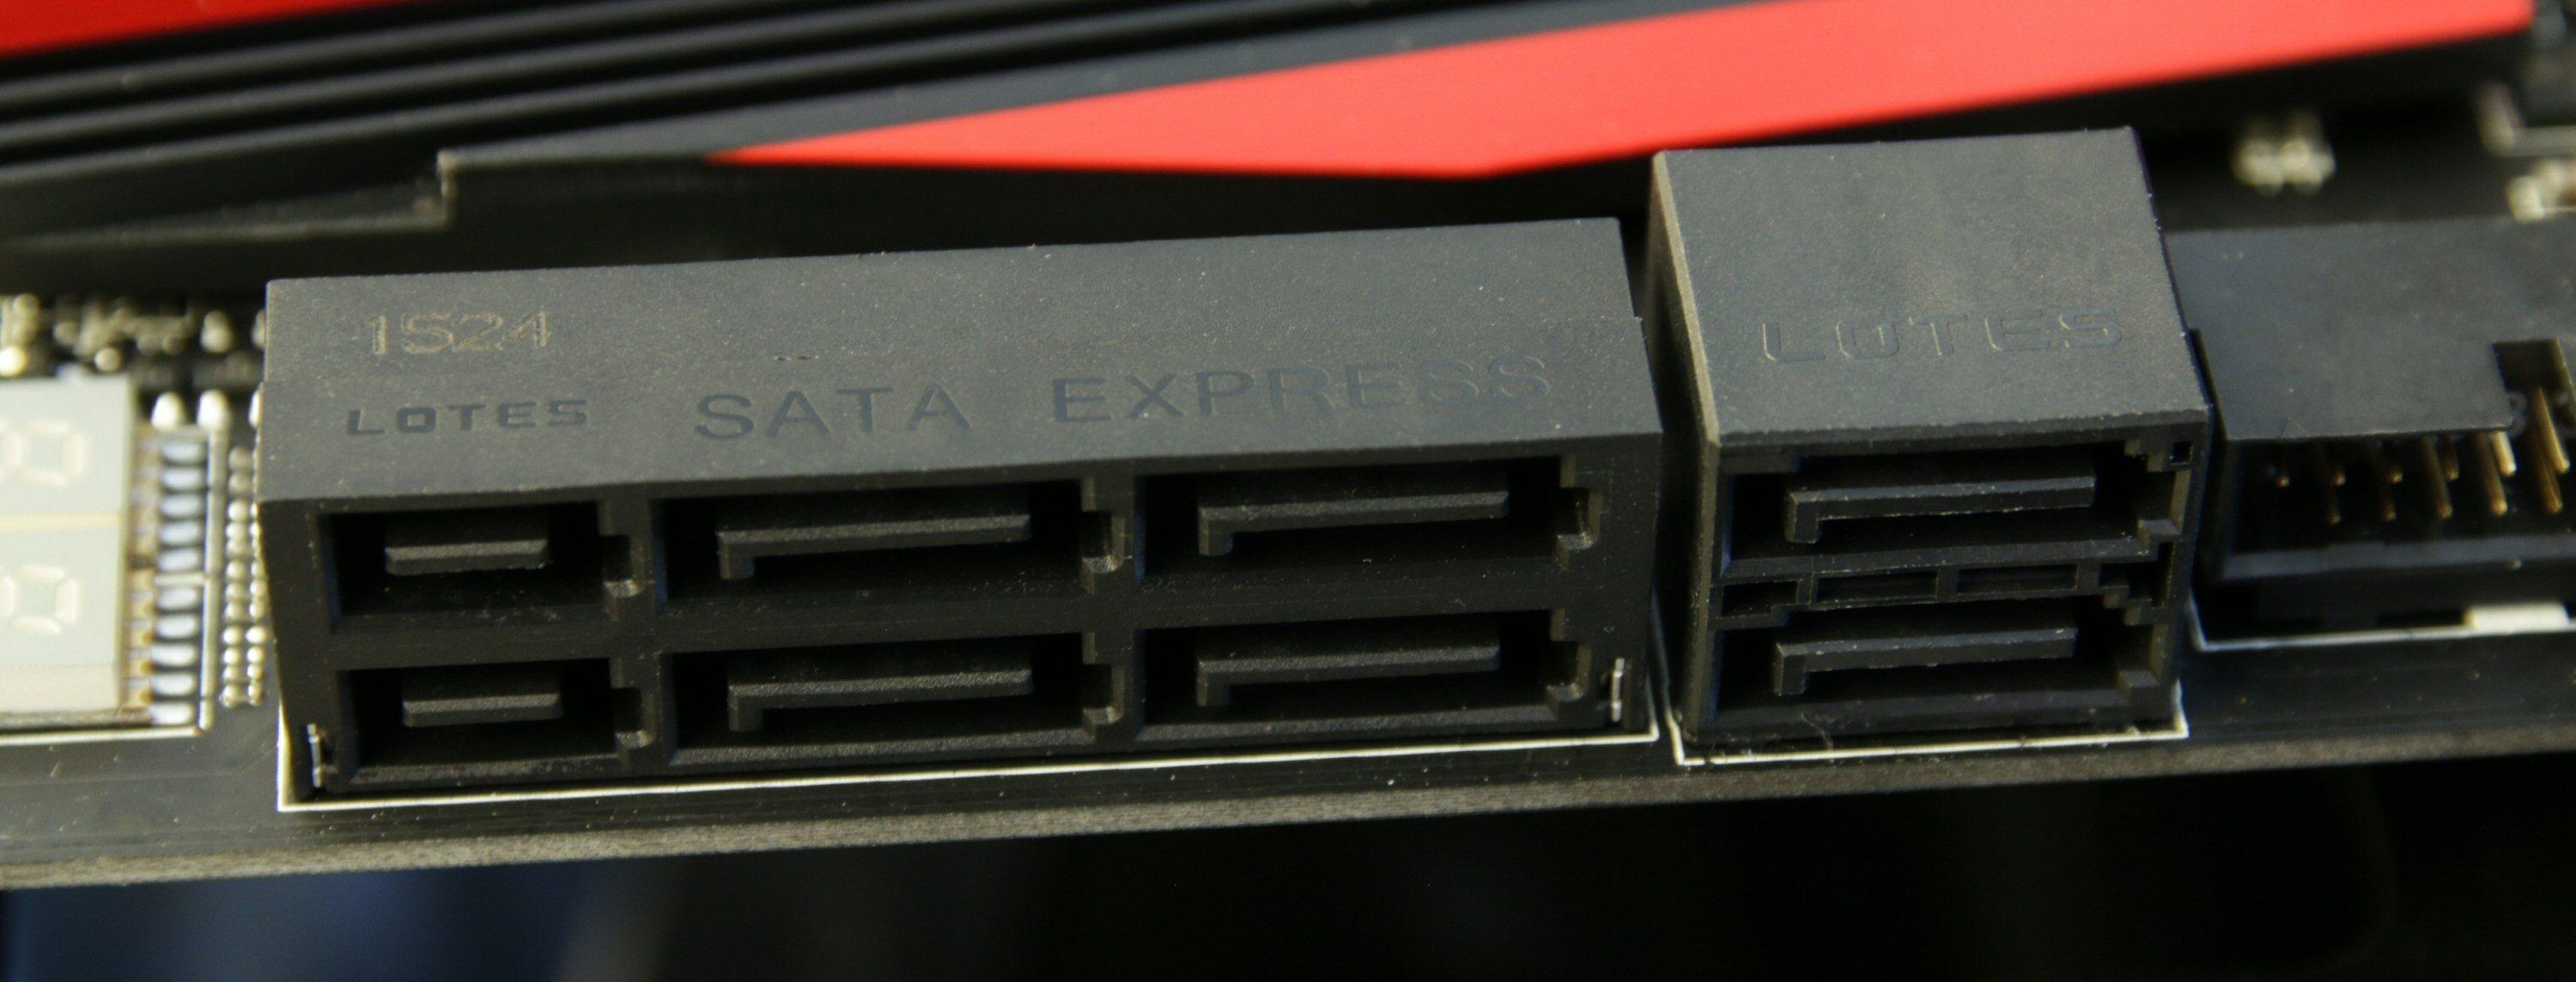 Mange nyere hovedkort er utstyrt med SATA Express. To tradisjonelle SATA-kontakter sitter til høyre. Foto: Vegar Jansen, Tek.no